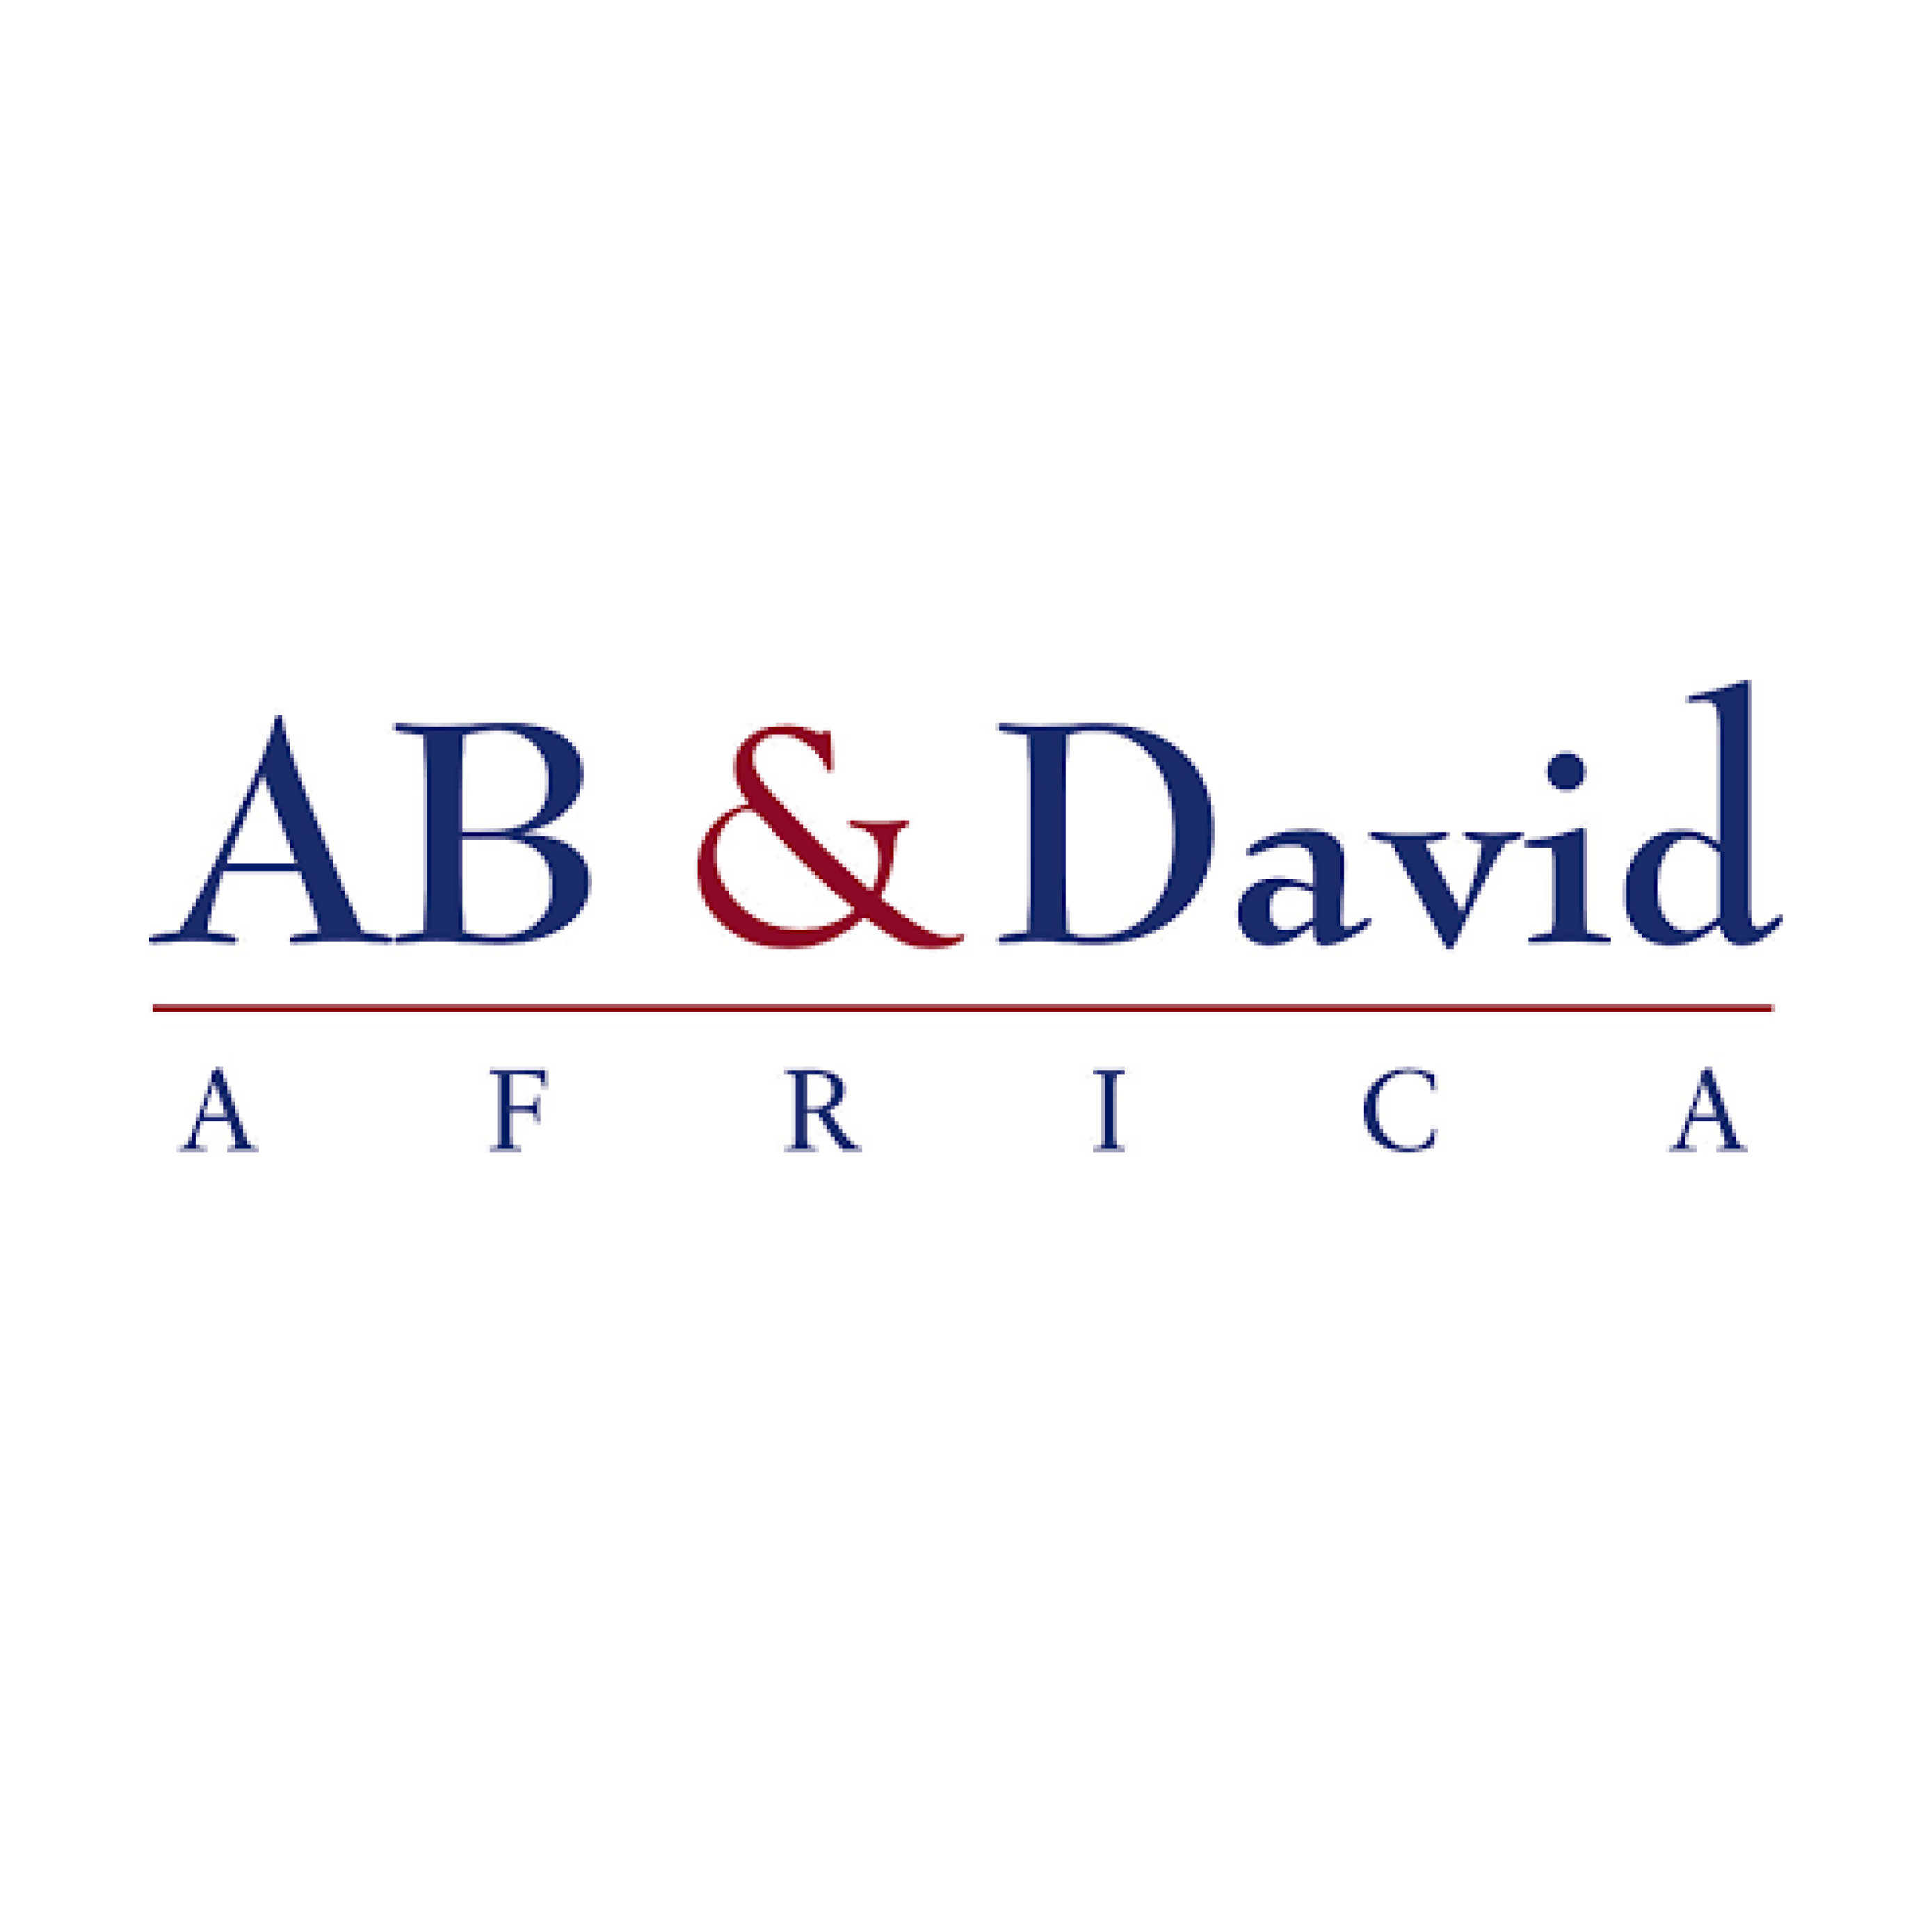 AB & David Africa